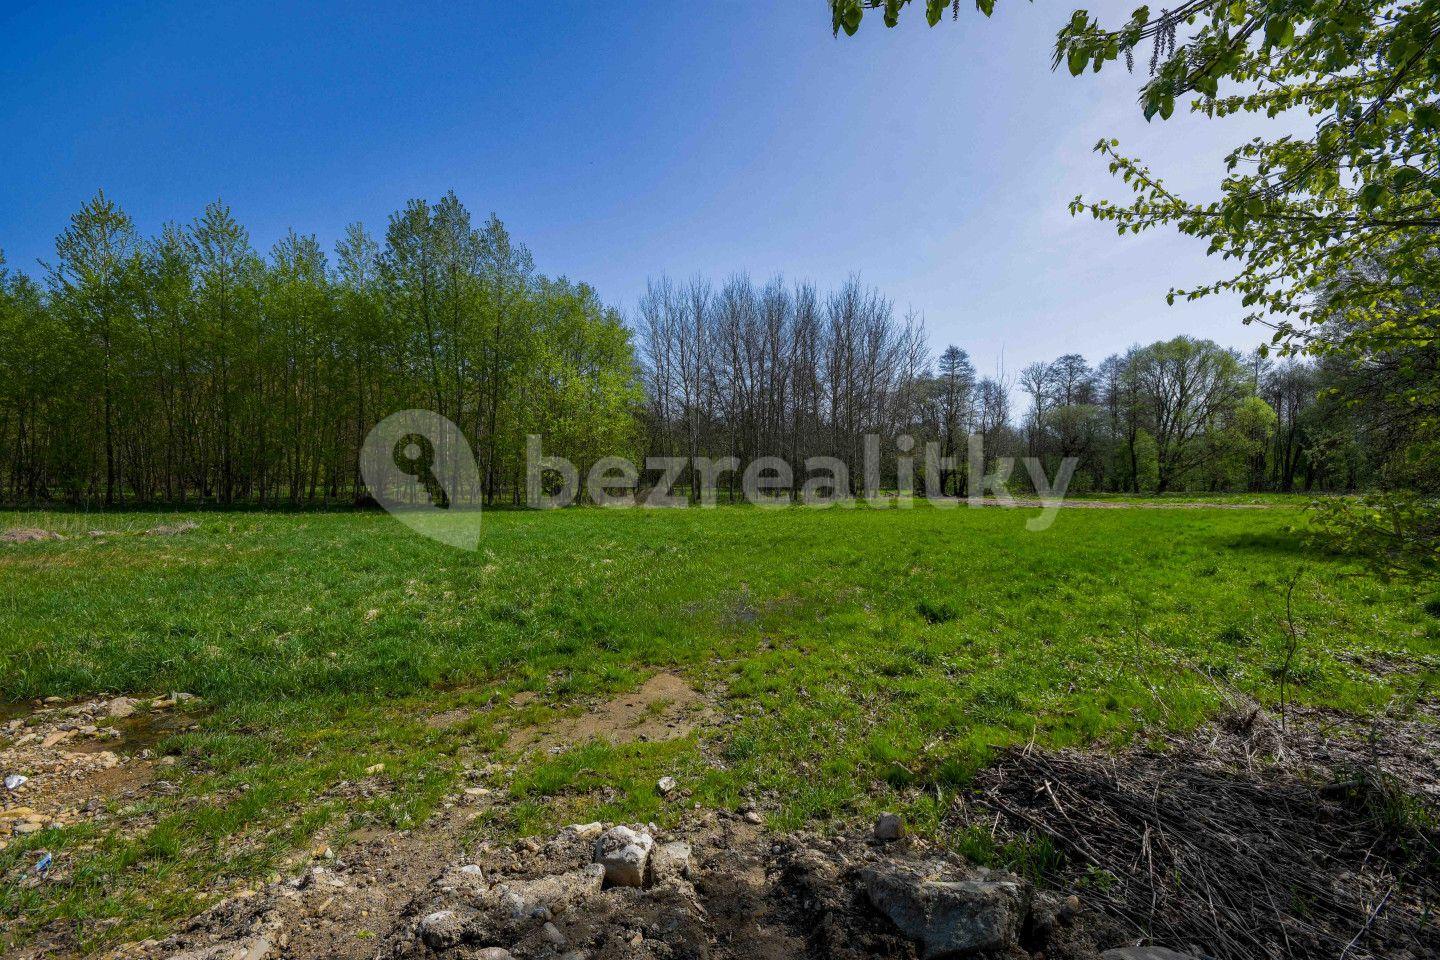 plot for sale, 7,544 m², Dolní Morava, Pardubický Region